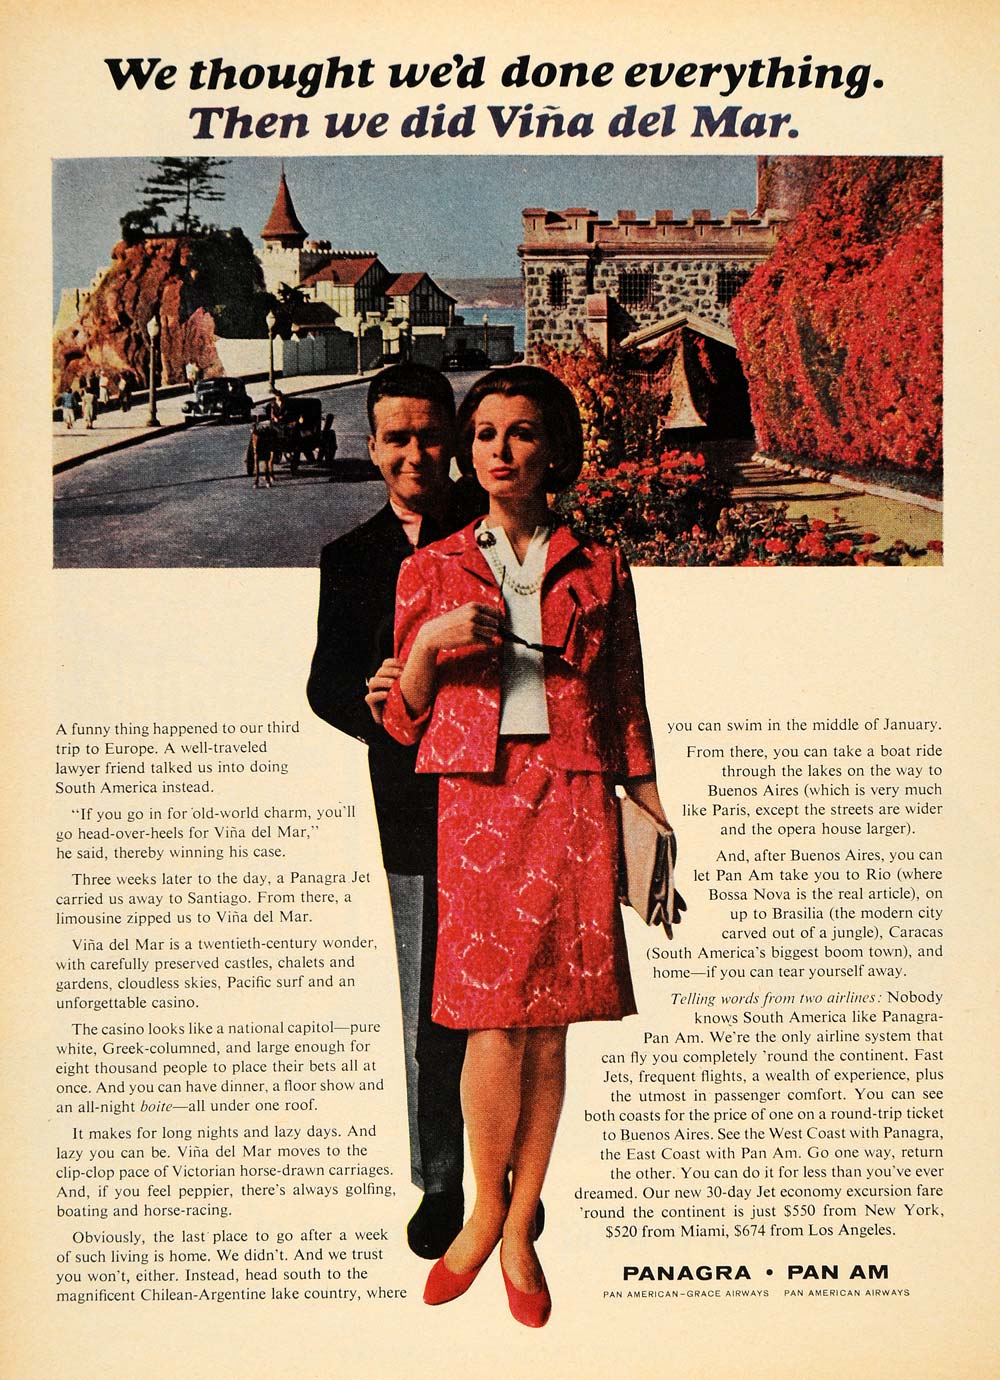 1965 Ad Pan American Grace Airways Vina del Mar Chile - ORIGINAL ADVERTISING TM6